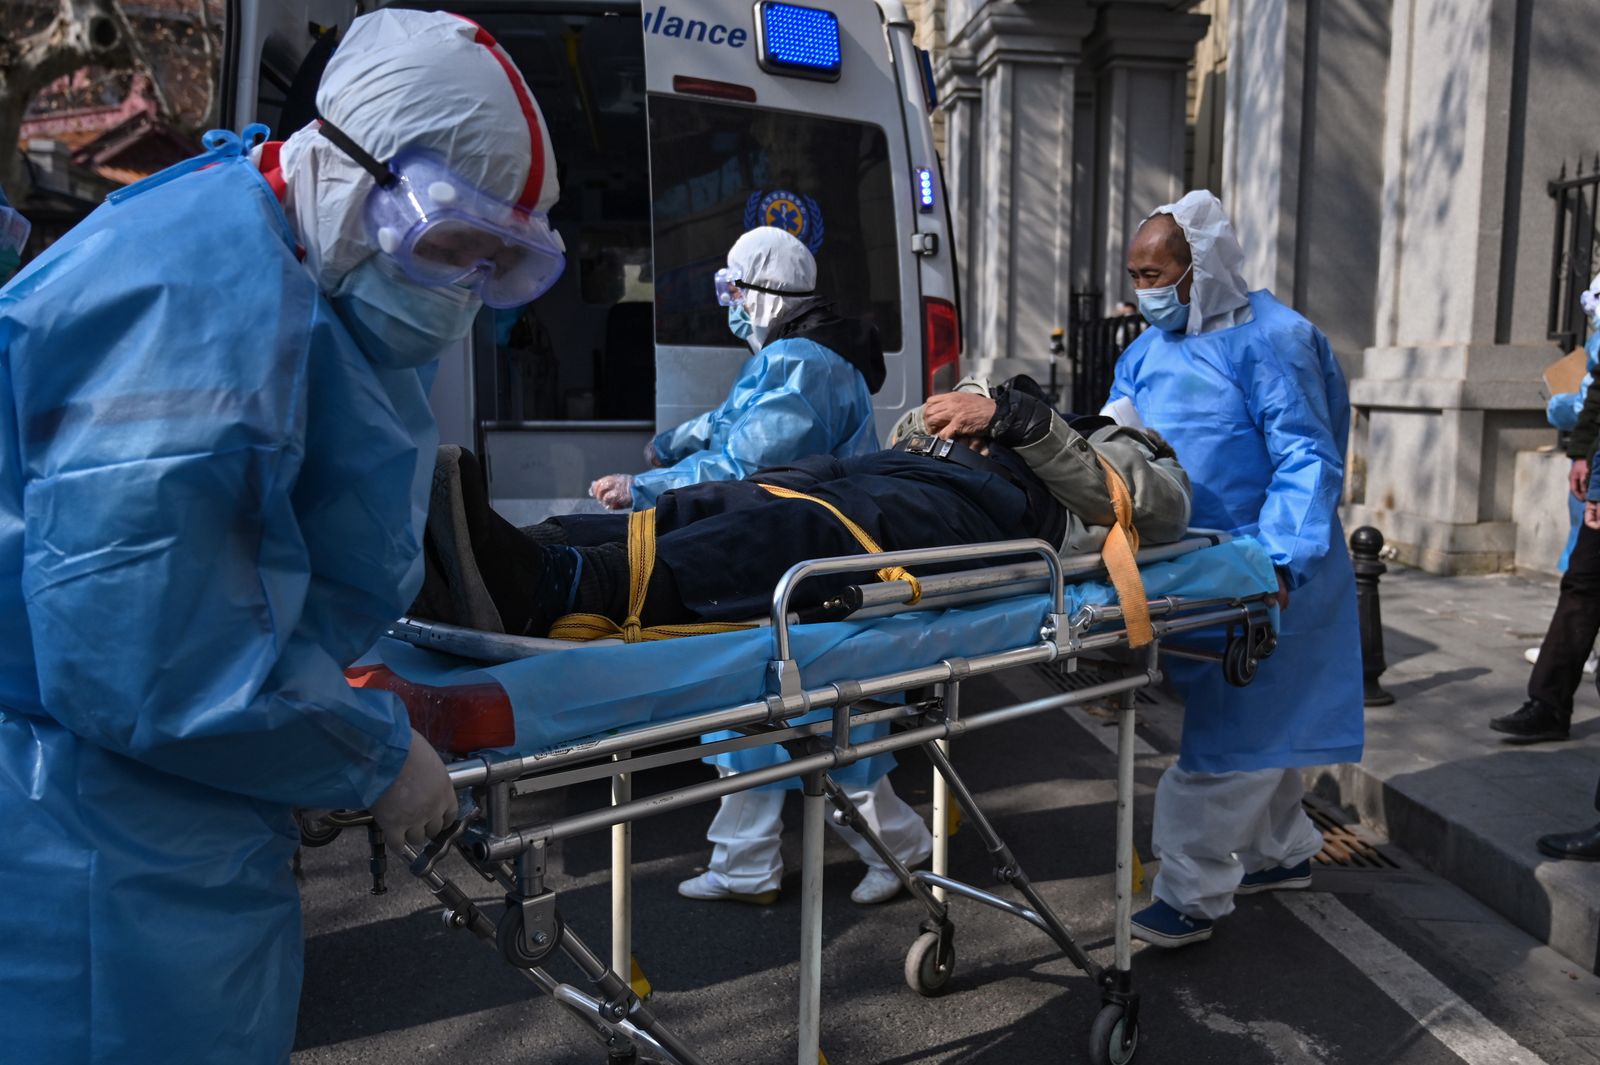 أحد المصابين بفيروس كورونا خلال نقله إلى المستشفى في ووهان بالصين 30 يناير 2020. - AFP